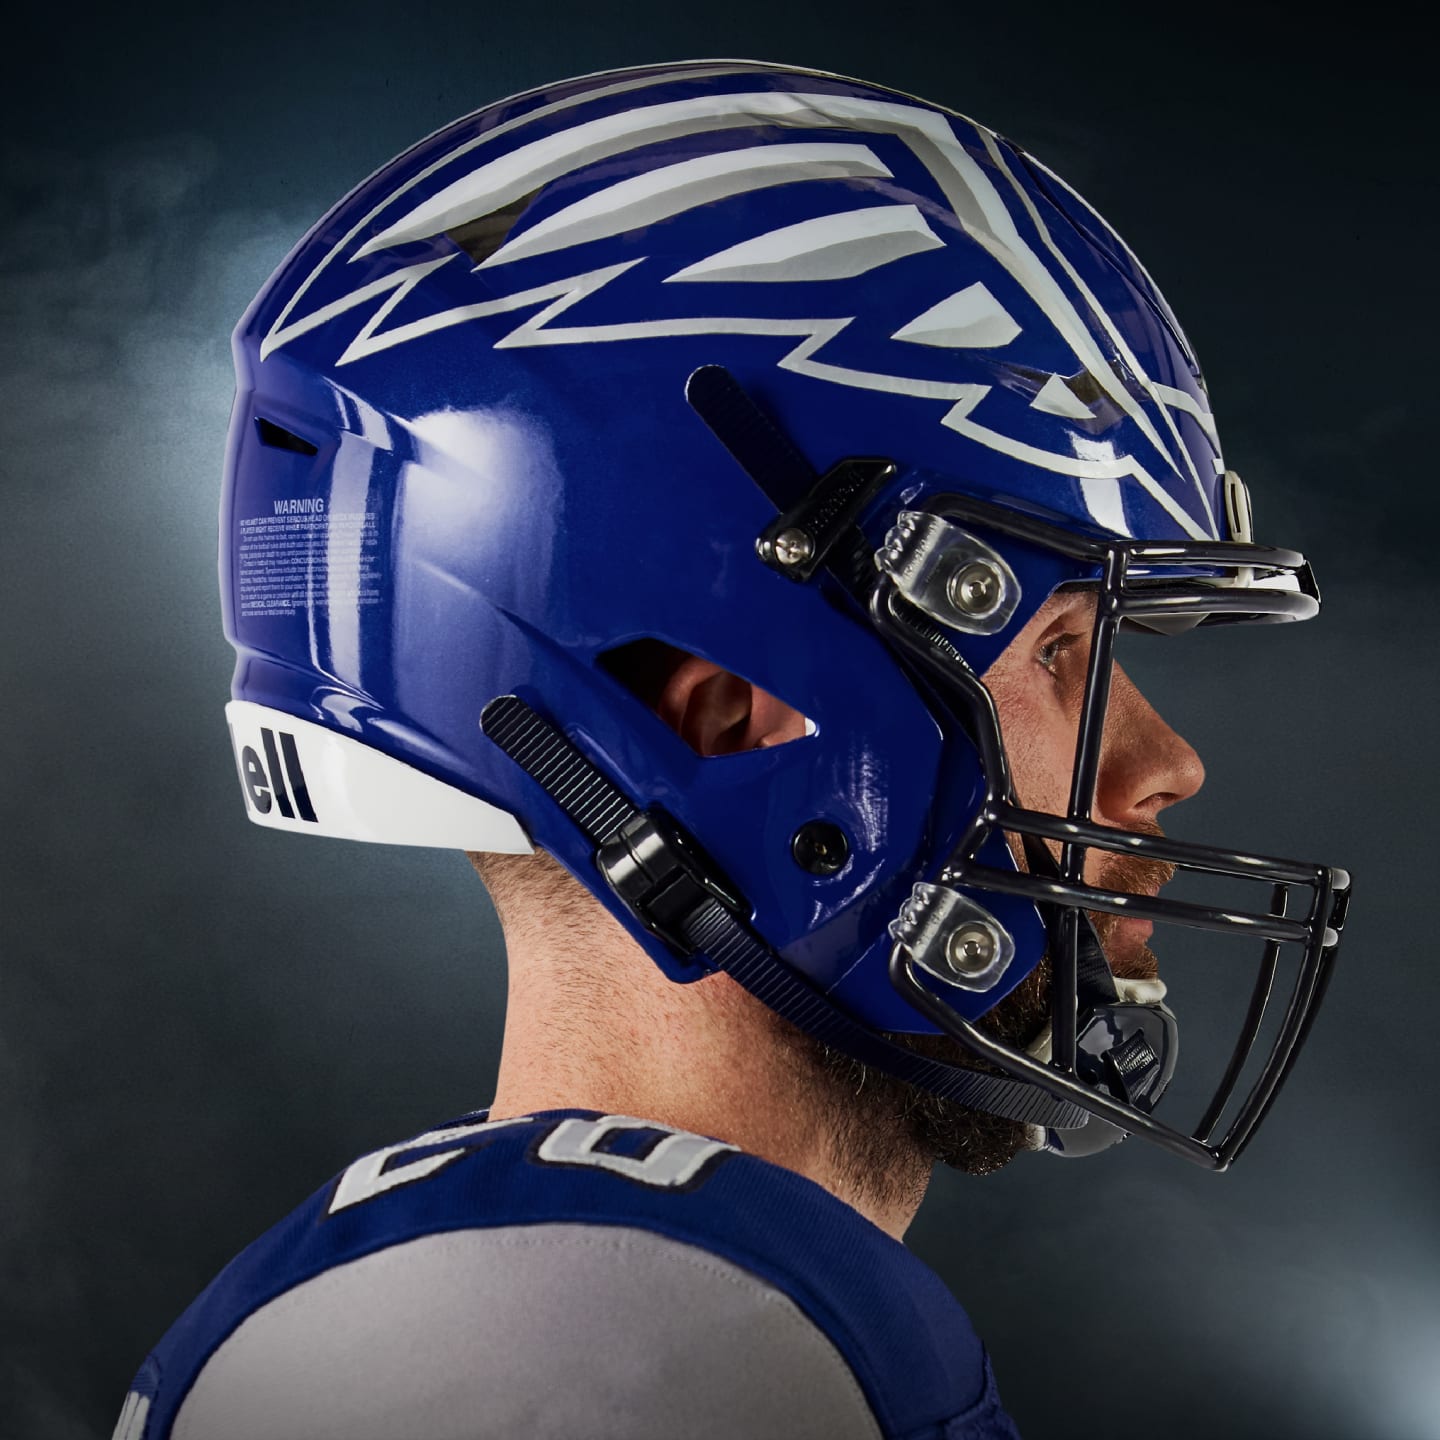 HFL's St Louis Battlehawks unveil new uniforms, helmets